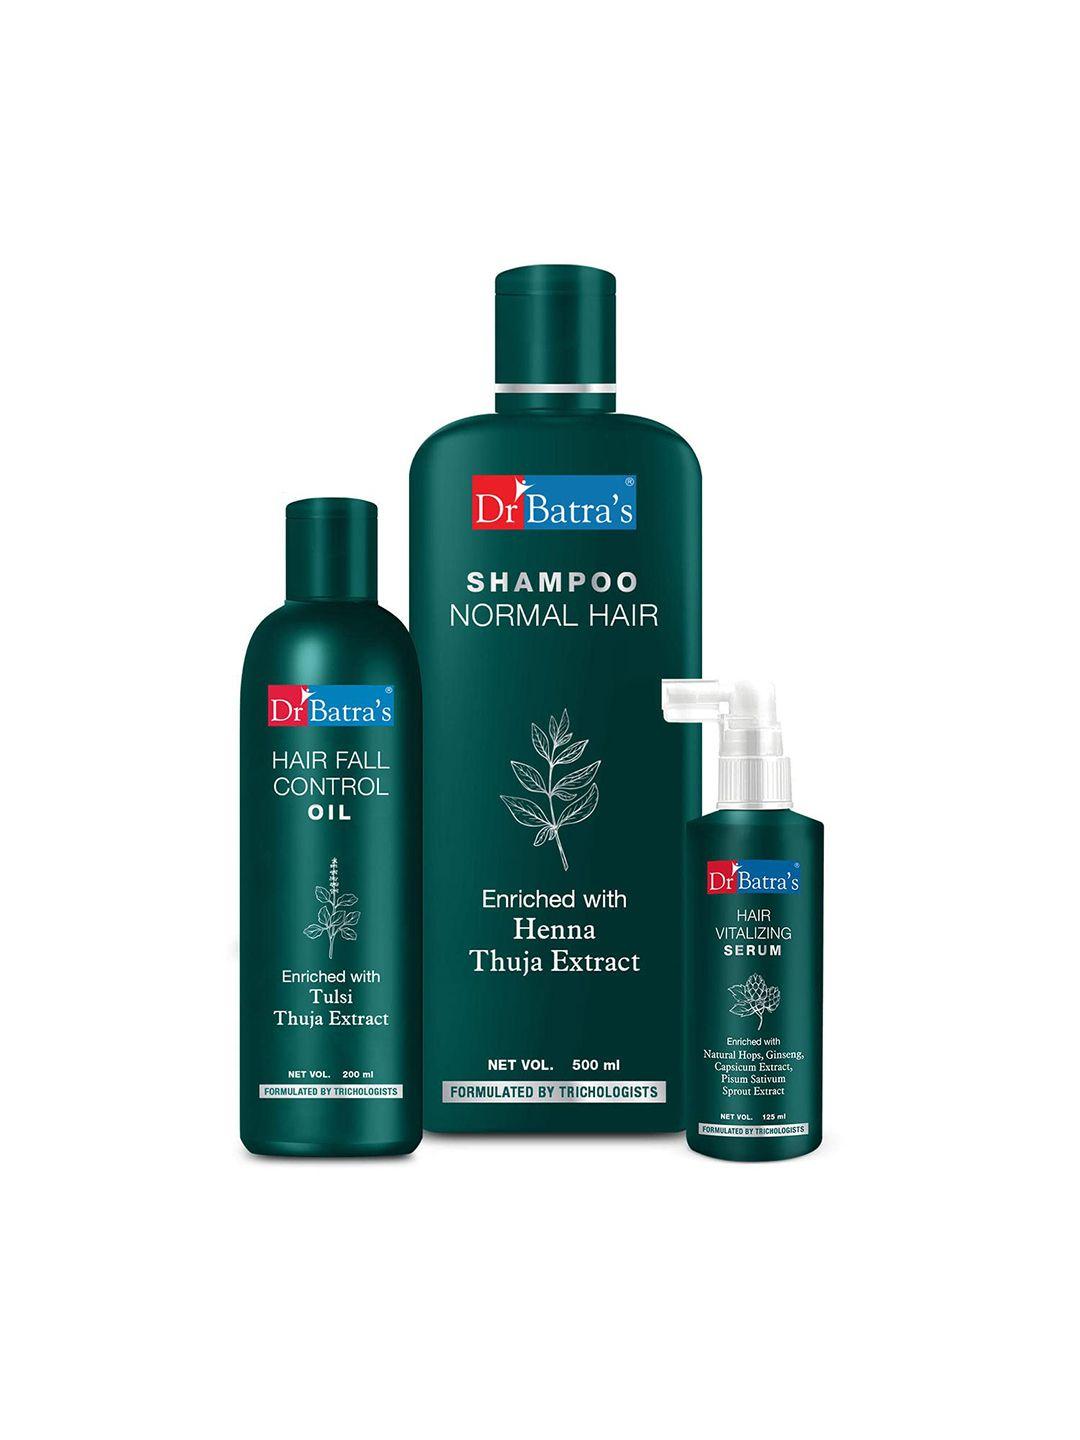 dr. batras hair vitalizing serum 125ml + normal hair shampoo 500ml + hair oil 200ml